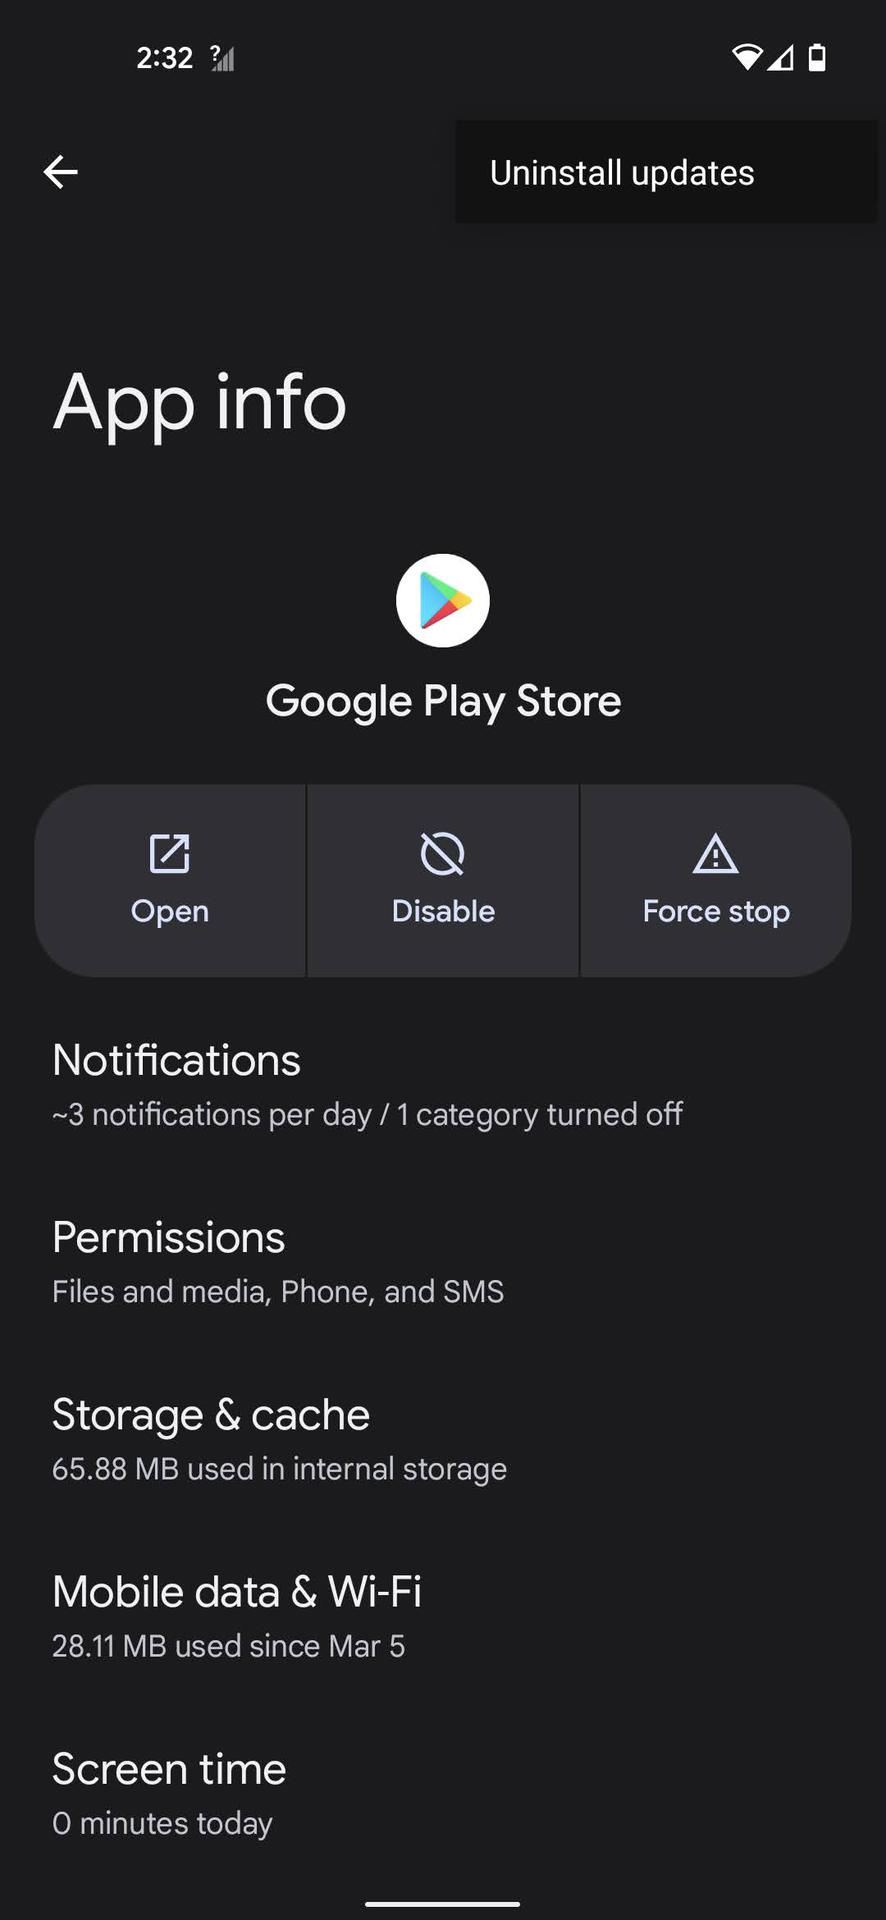 Uninstall Google Play Store updates 4